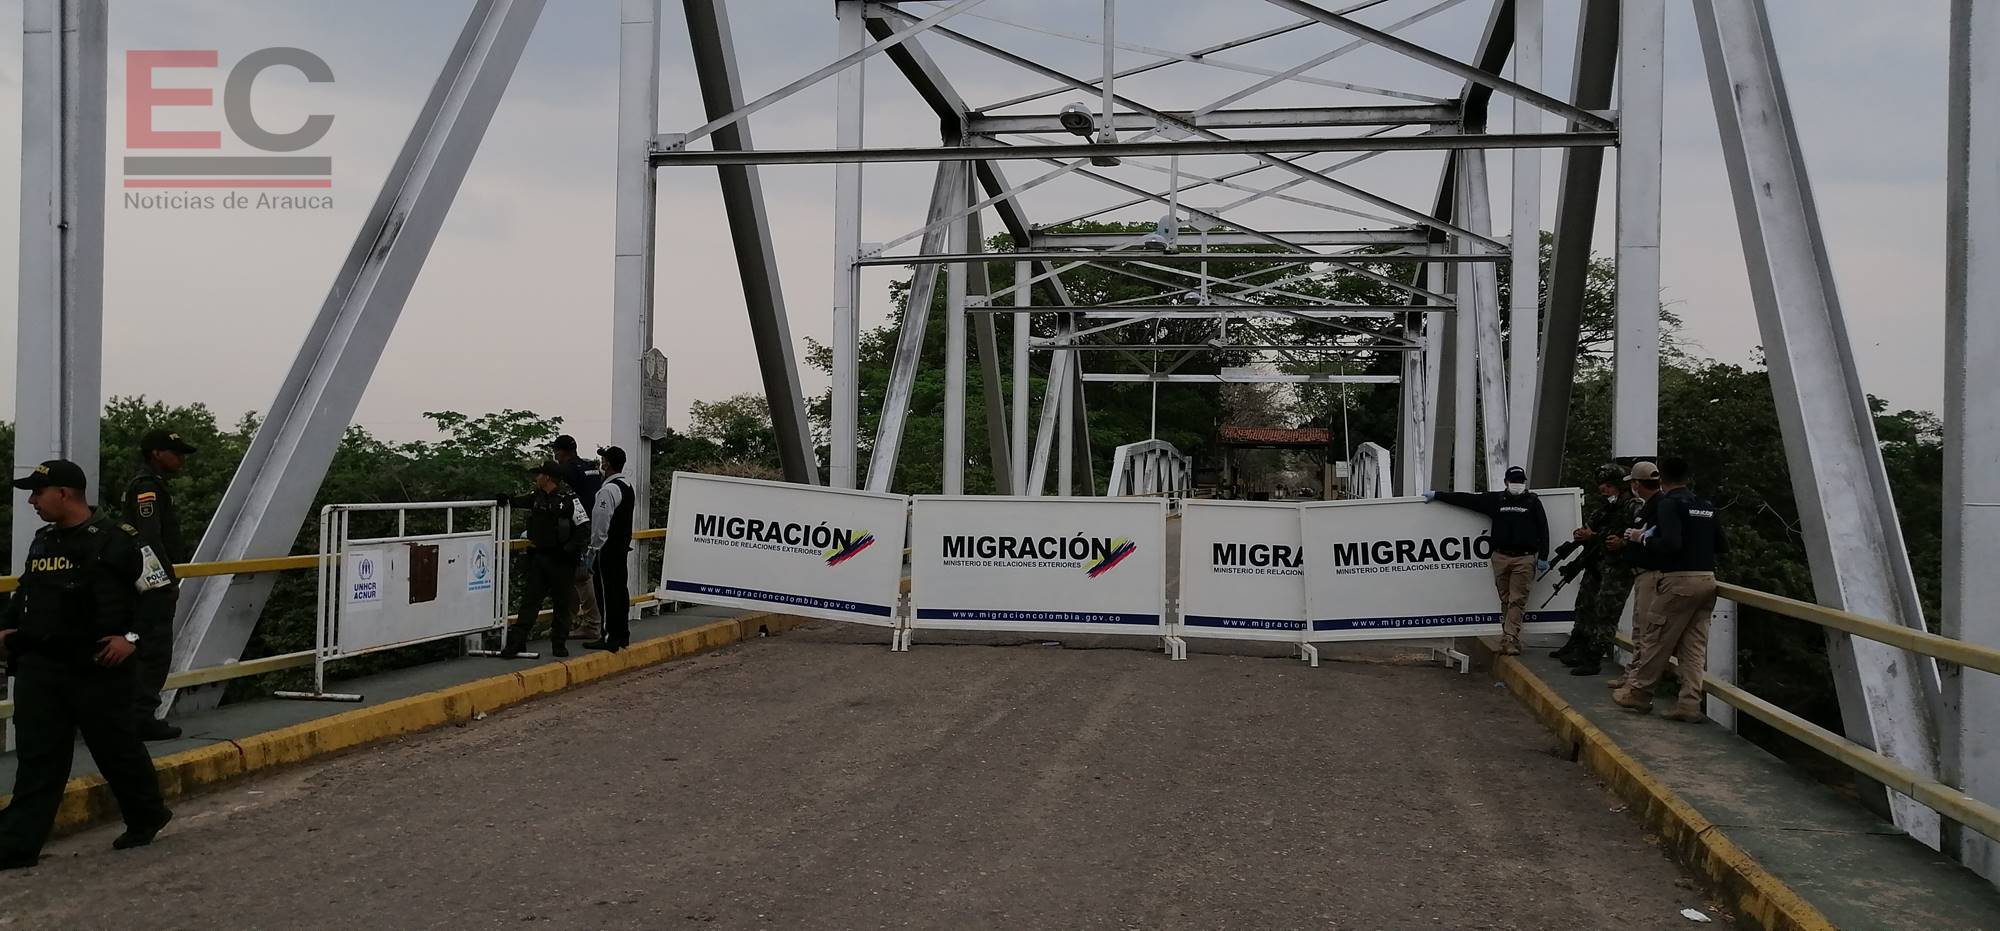 Frontera entre Arauca y Venezuela permanecerá cerrada “hasta nueva orden”